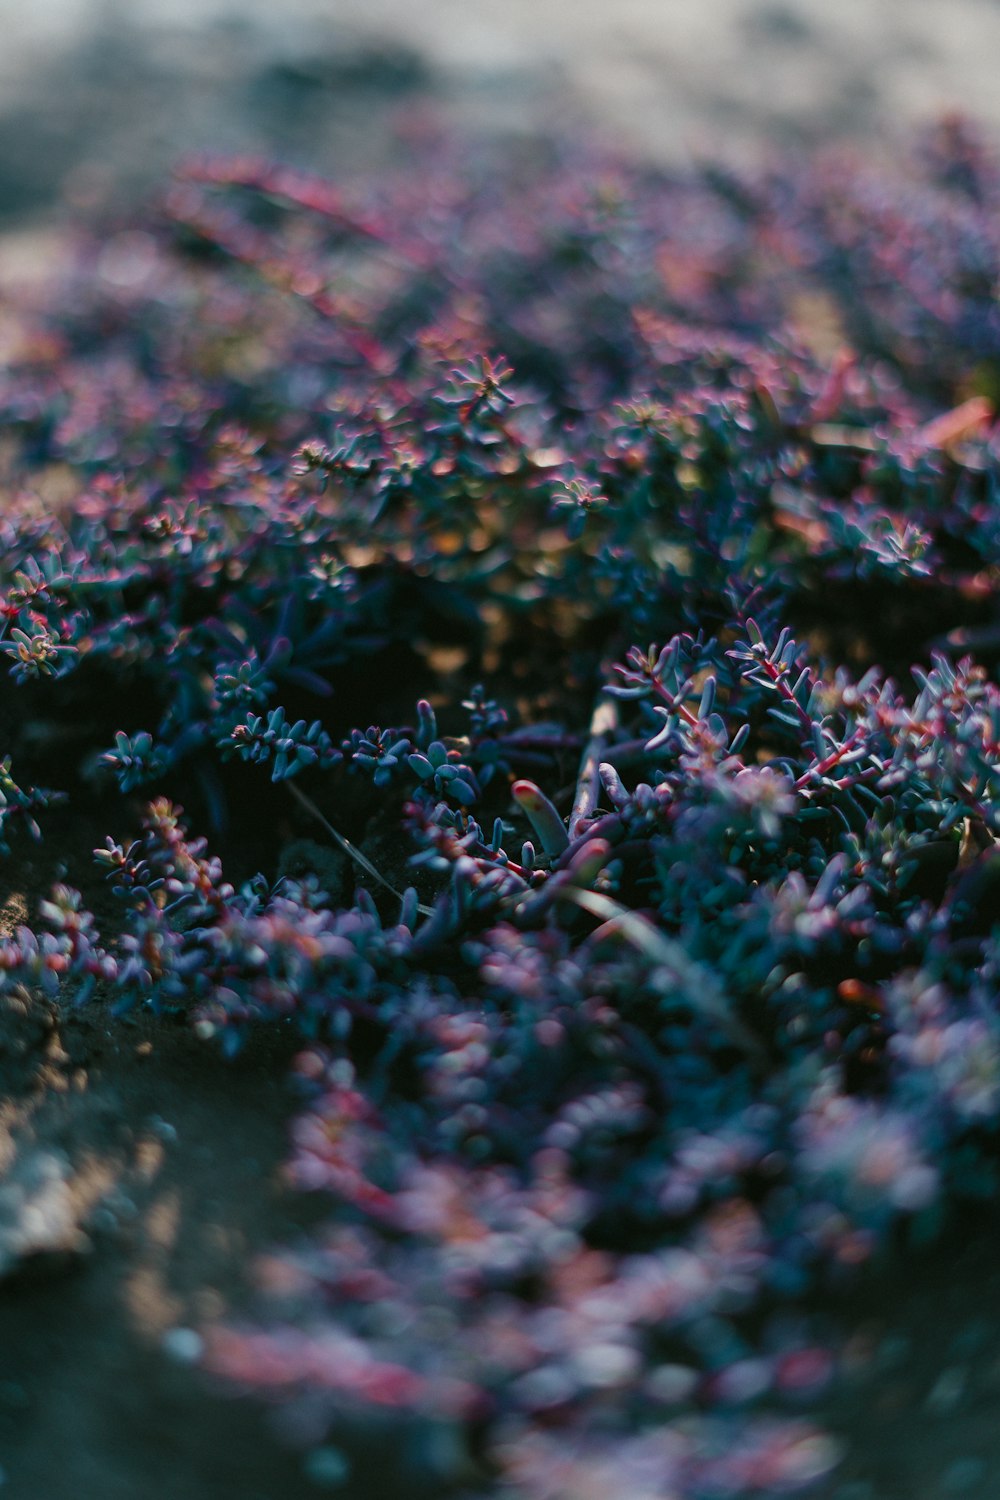 tilt shift focus photography of purple plants